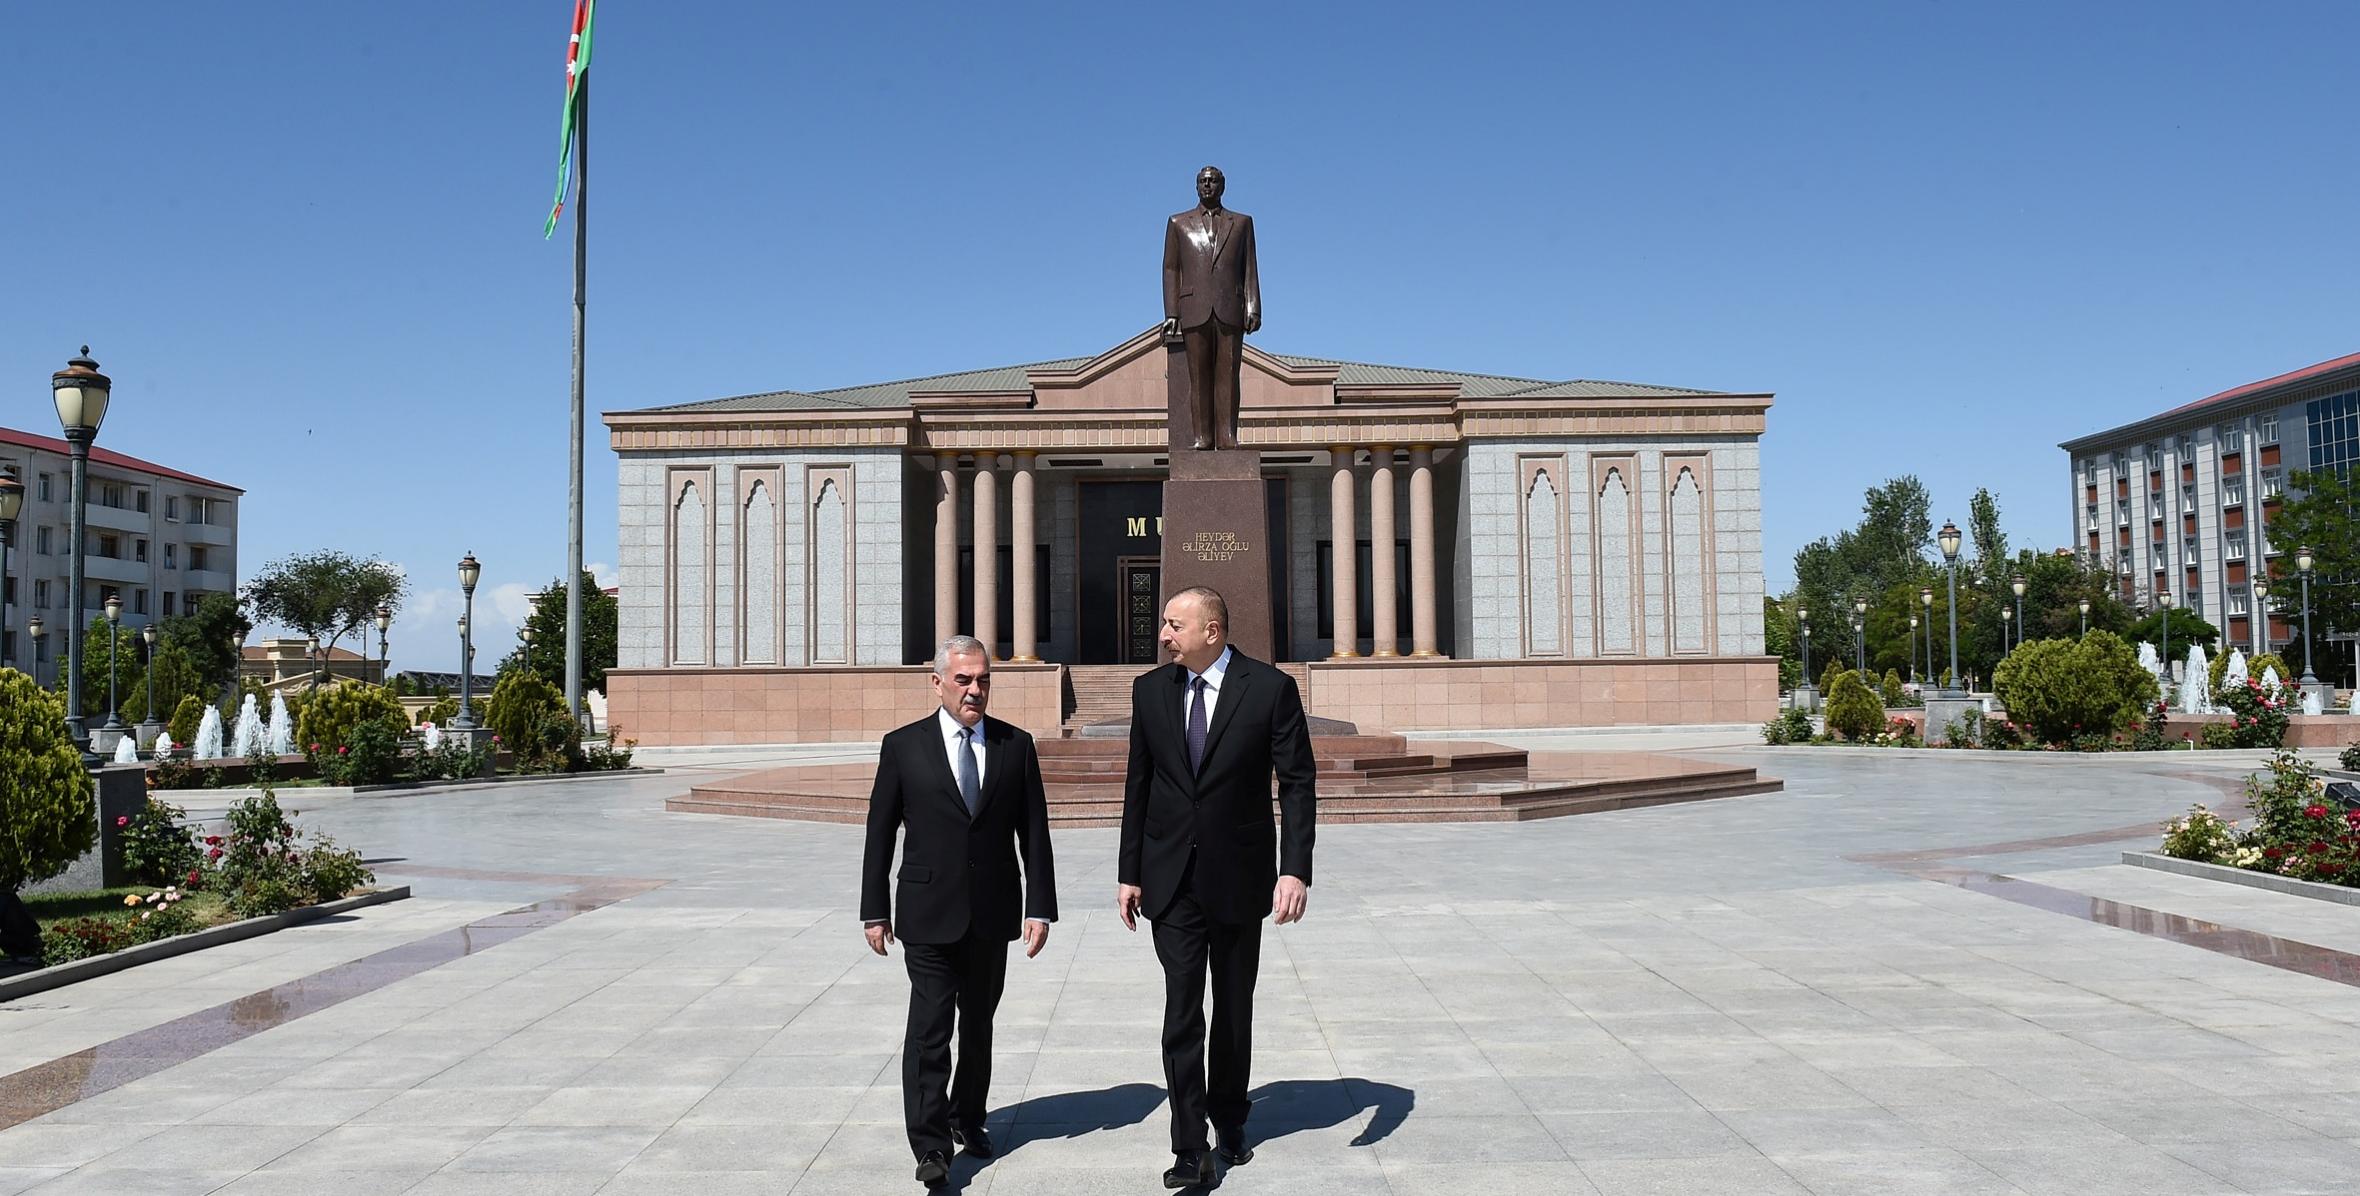 Ильхам Алиев посетил возведенный в центре города Нахчыван памятник общенациональному лидеру нашего народа Гейдару Алиеву